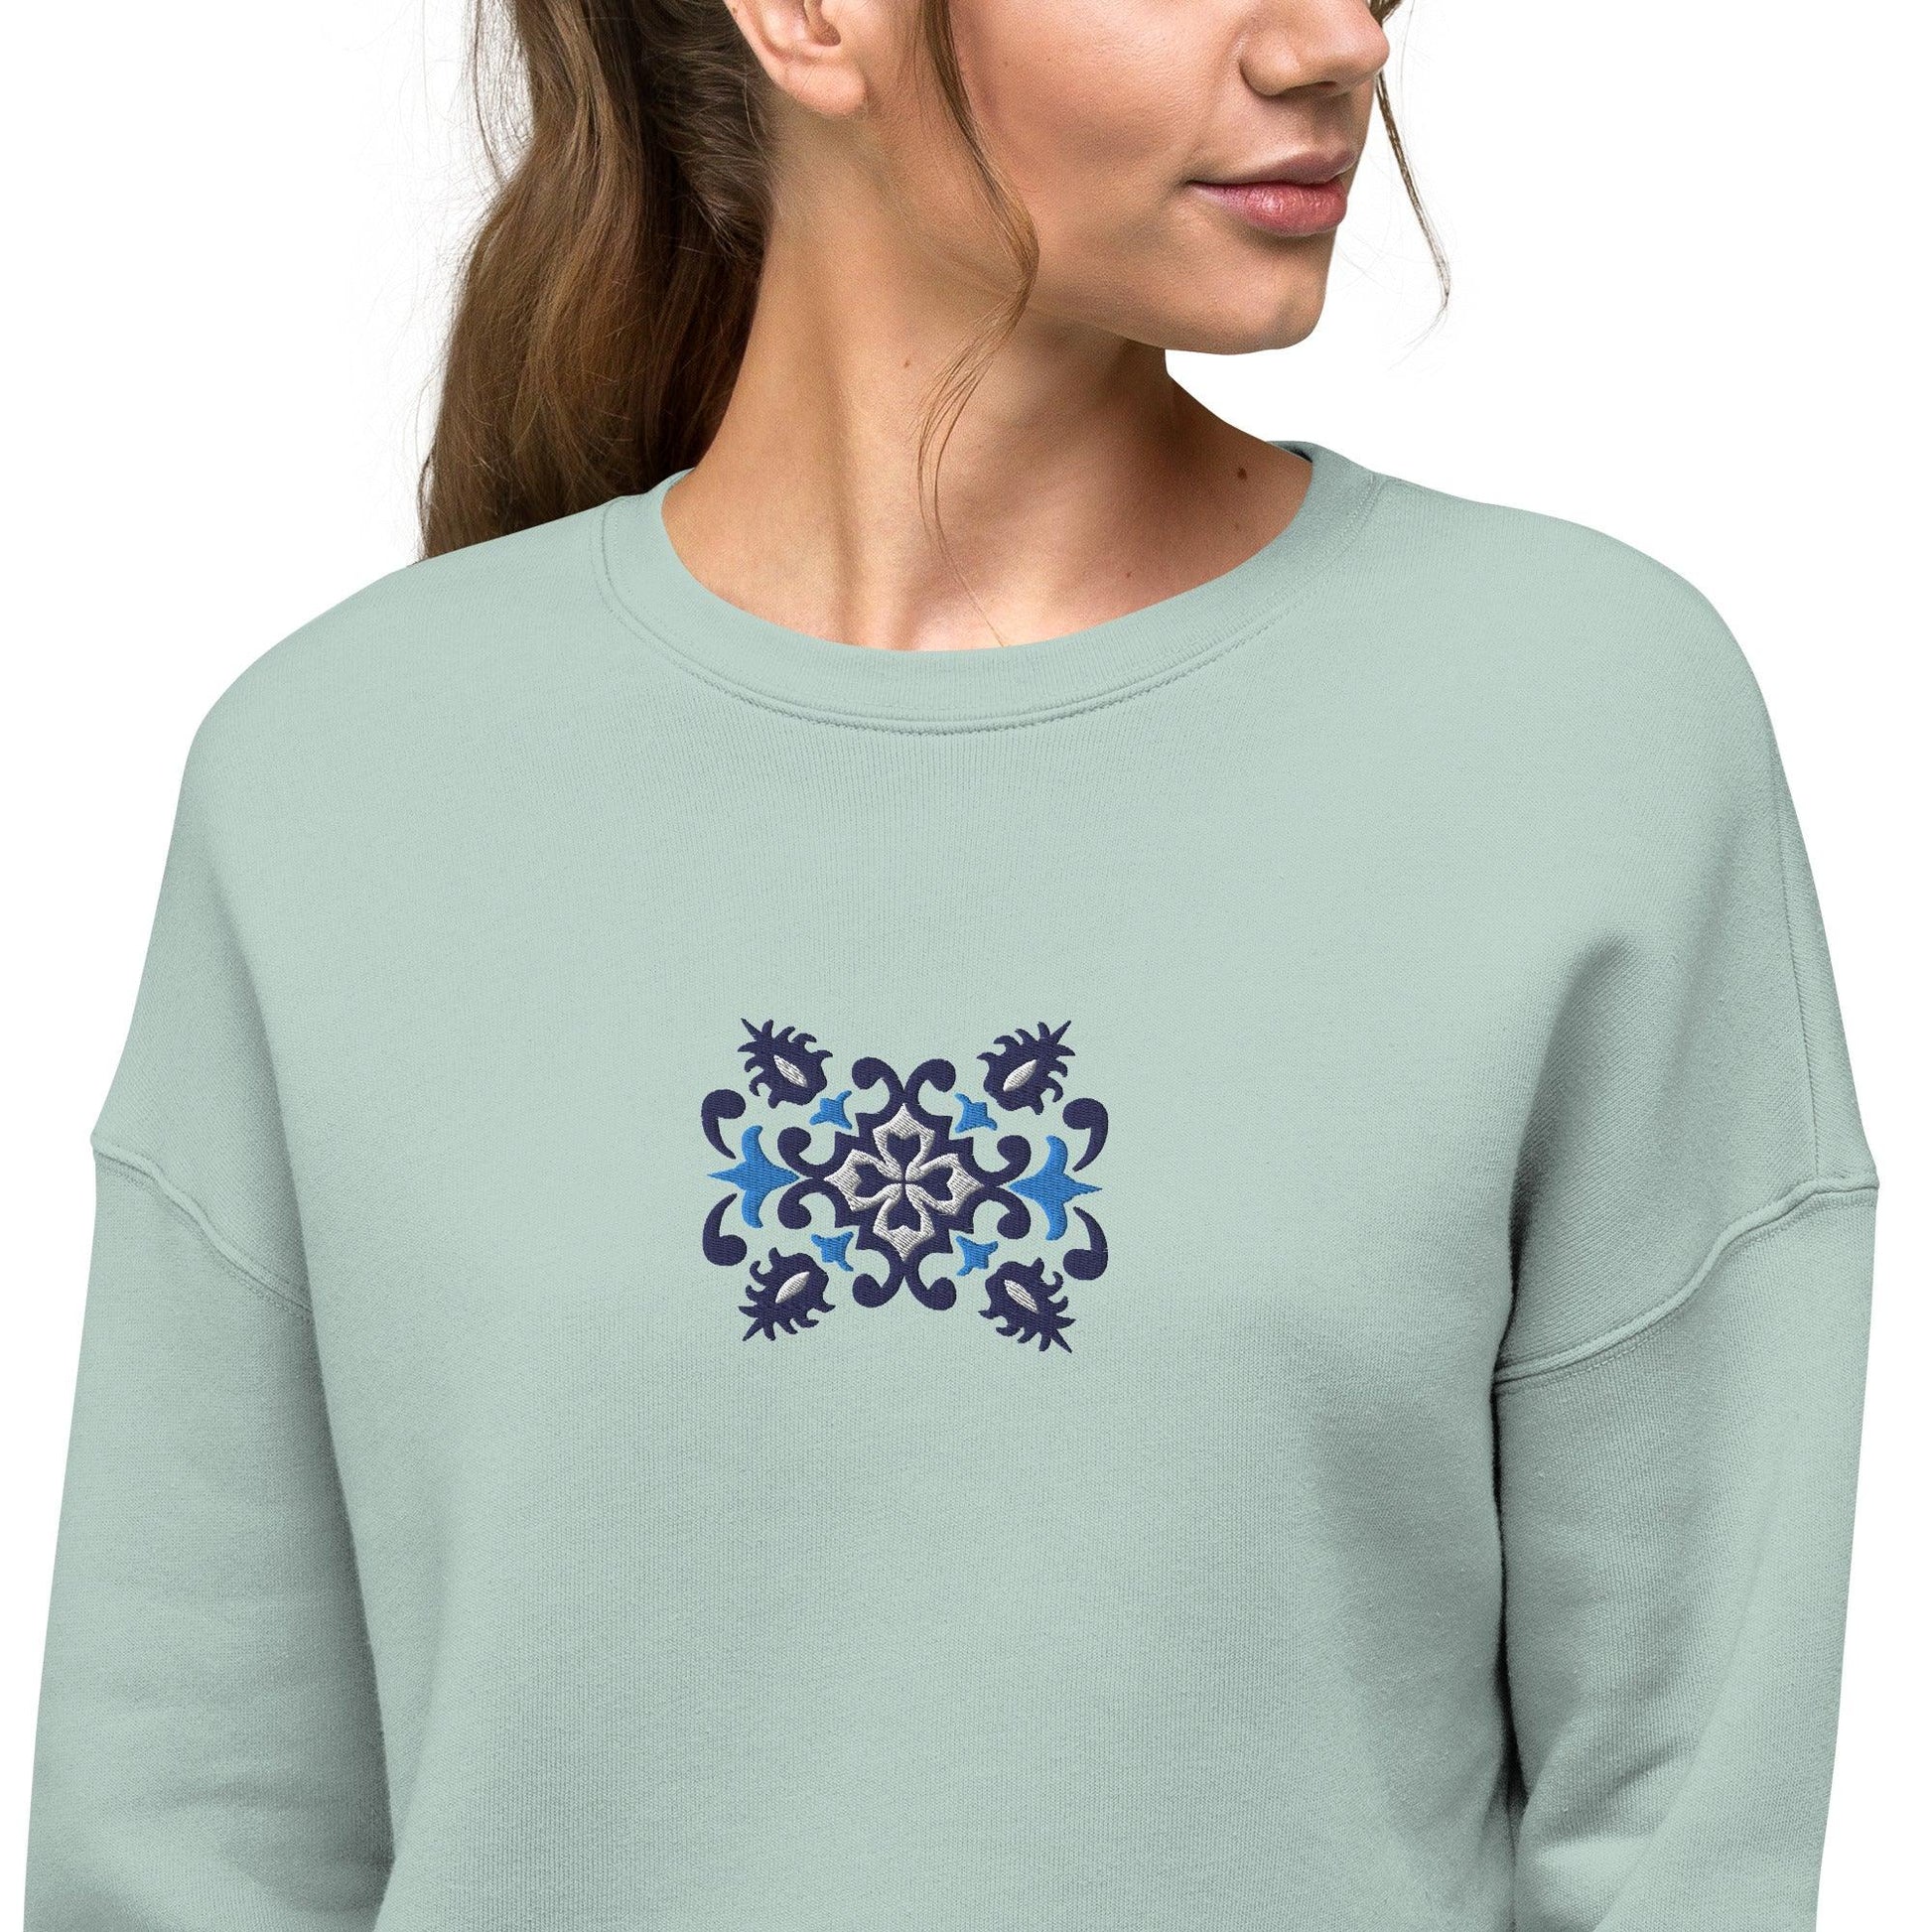 Portuguese Azulejo Tile Motif Cropped Sweatshirt - The Global Wanderer